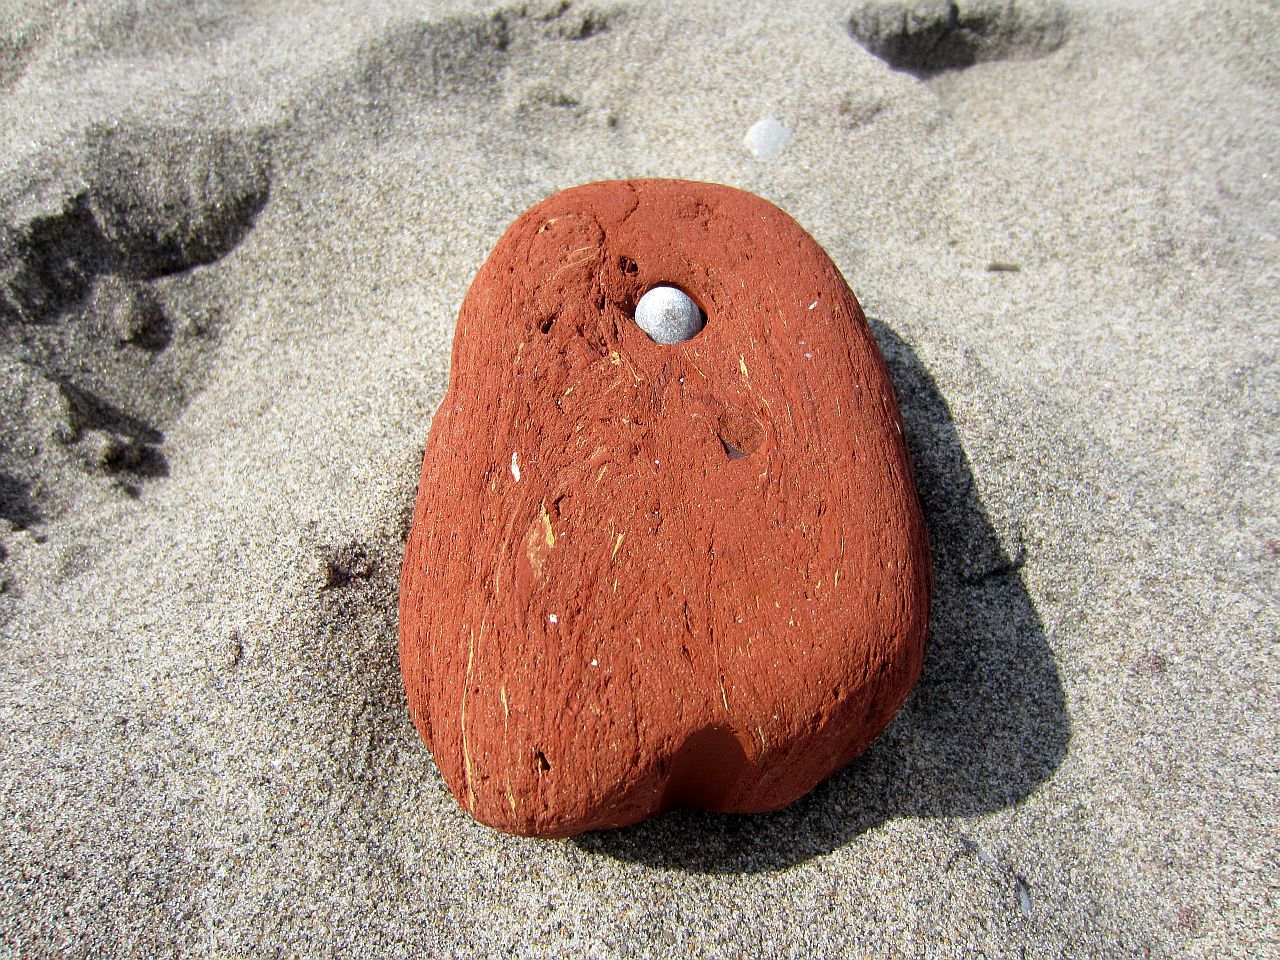 A rock in a rock